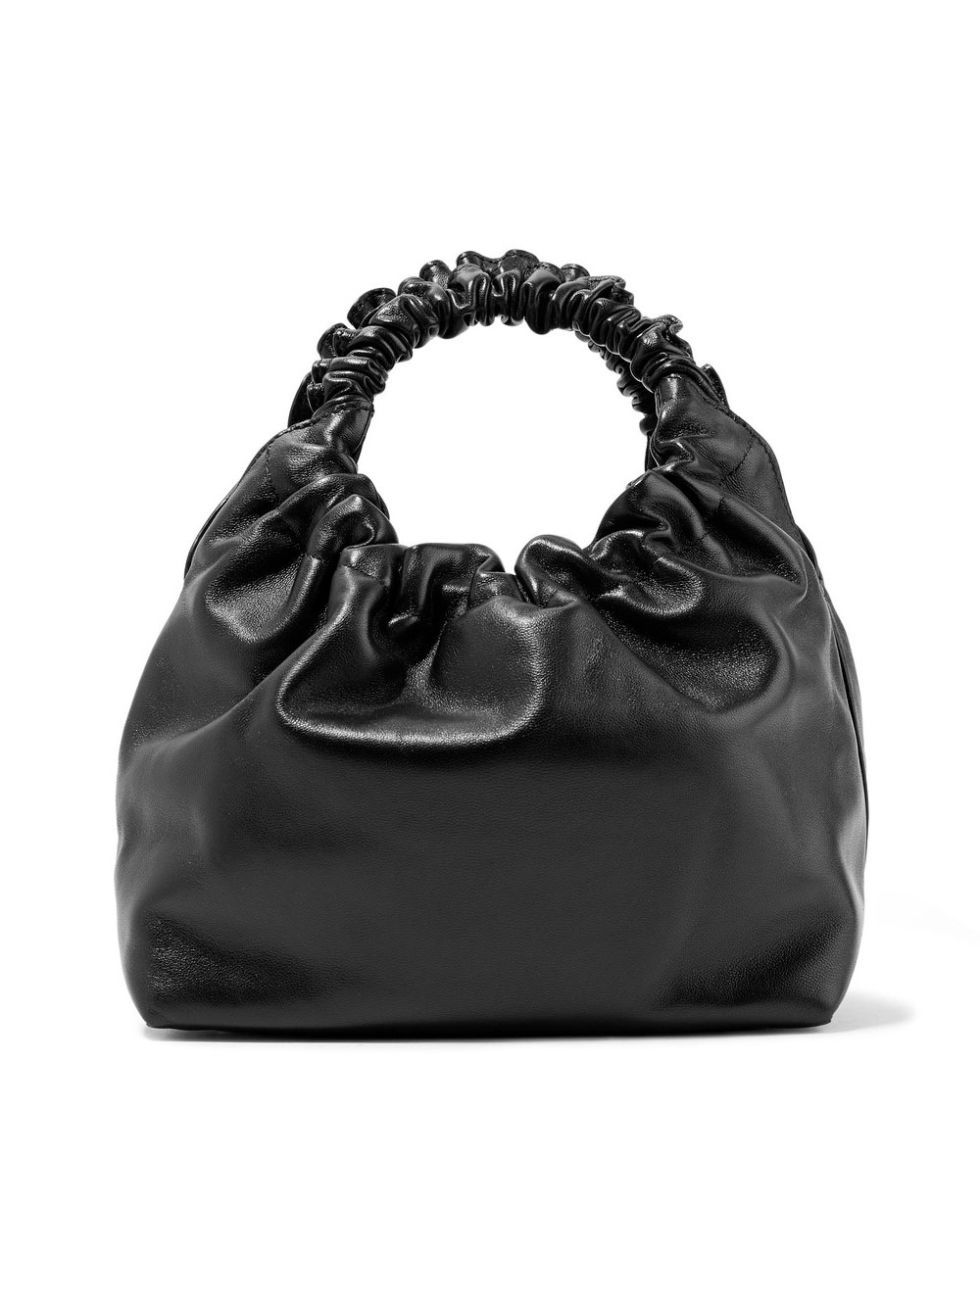 Handbag, Bag, Black, Fashion accessory, Shoulder bag, Leather, Hobo bag, Luggage and bags, 